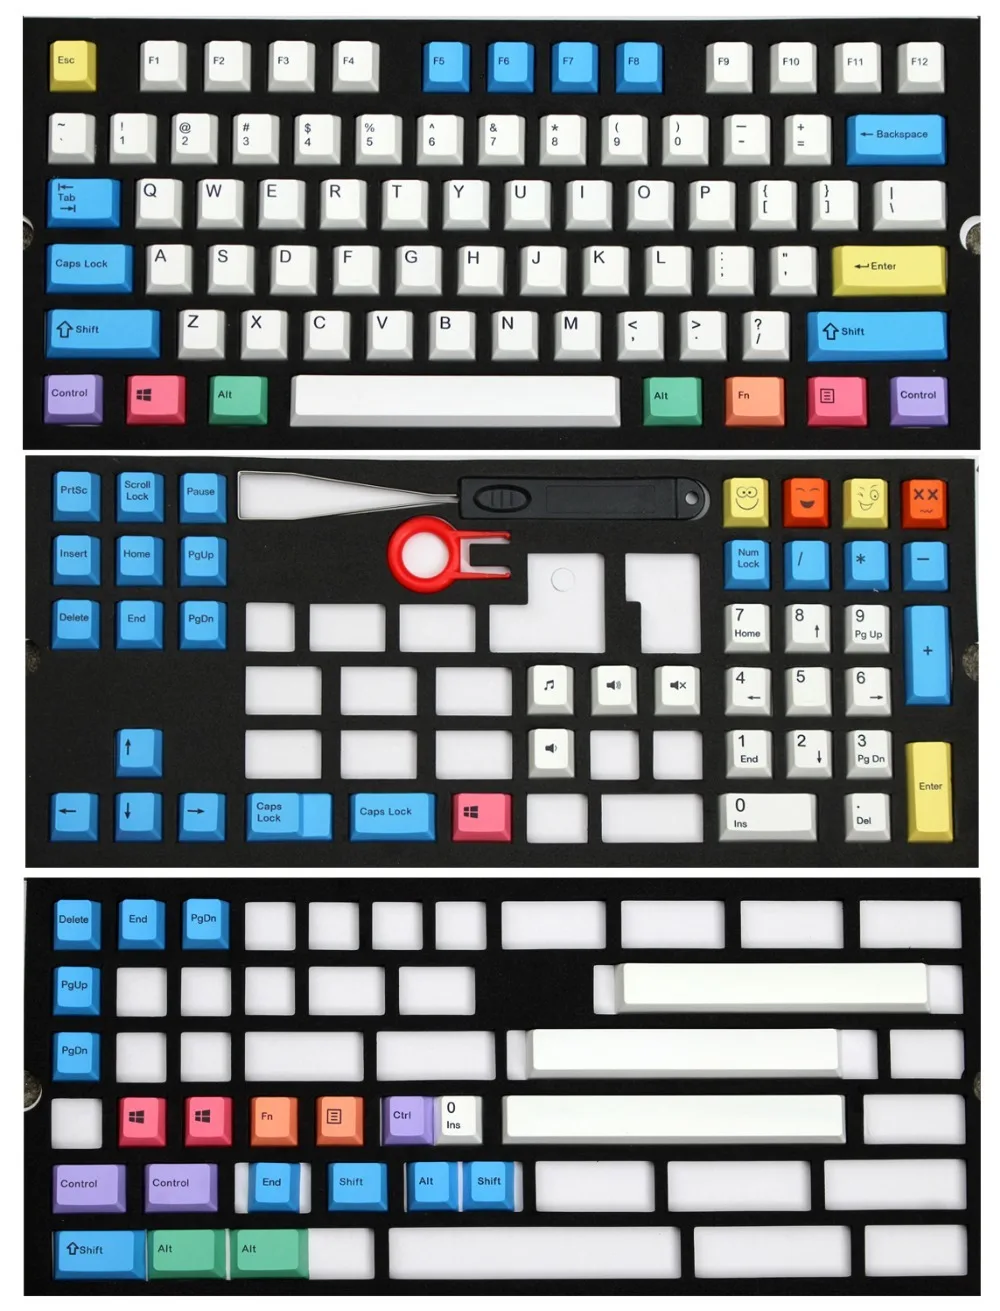 Цветной мел 108/138 клавиш механическая клавиатура клавишные колпачки pbt Вишневый профиль ANSI макет только keycap не клавиатура